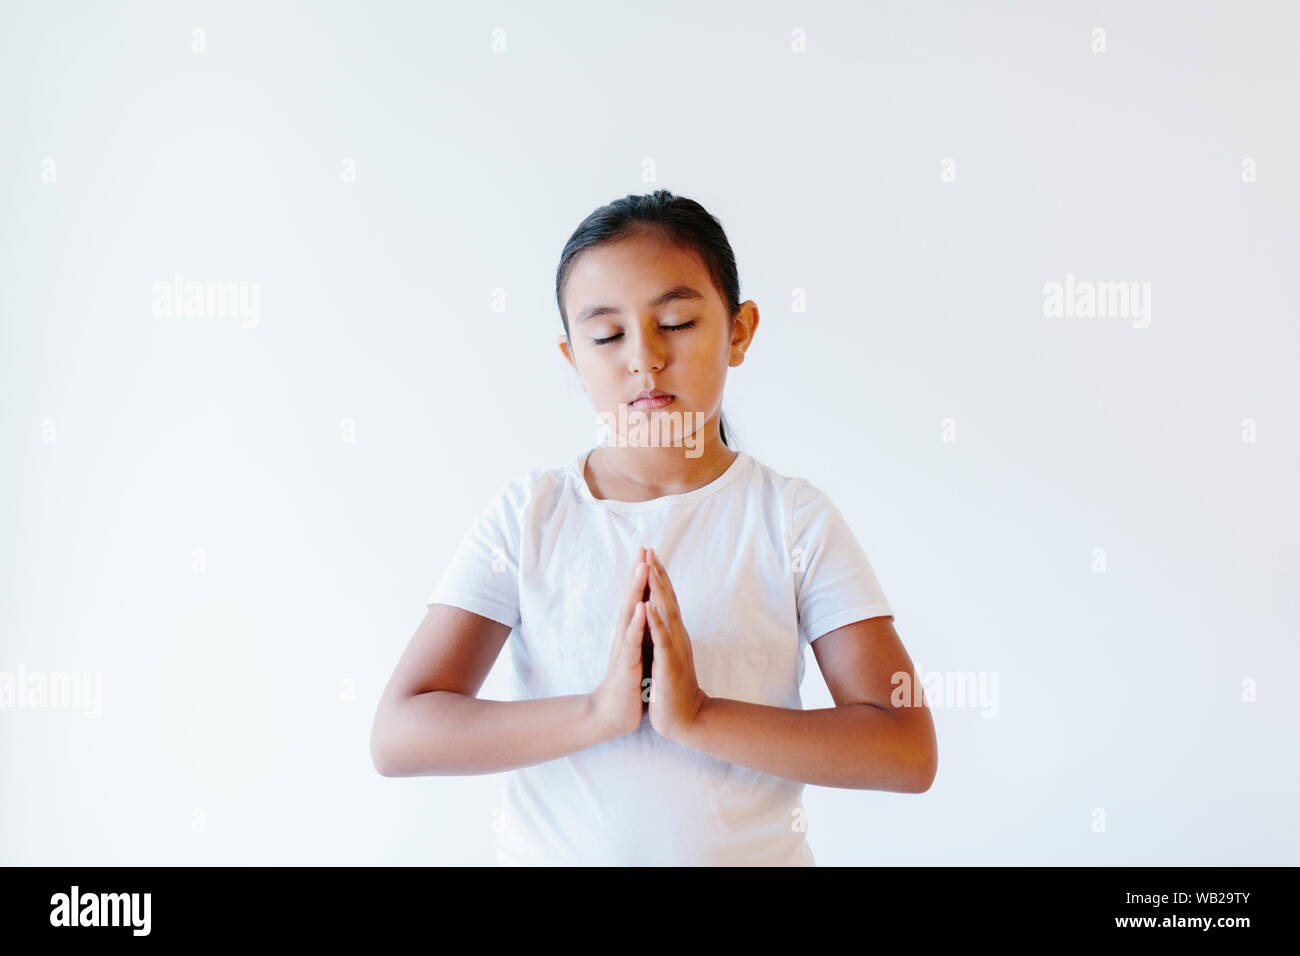 Ein 9-jähriges Mädchen sitzt ihr Namaste darstellen. Sie trägt weiße Kleidung. Sie hat Hispanic Ethnizität Features. Ihre Augen sind geschlossen. Stockfoto